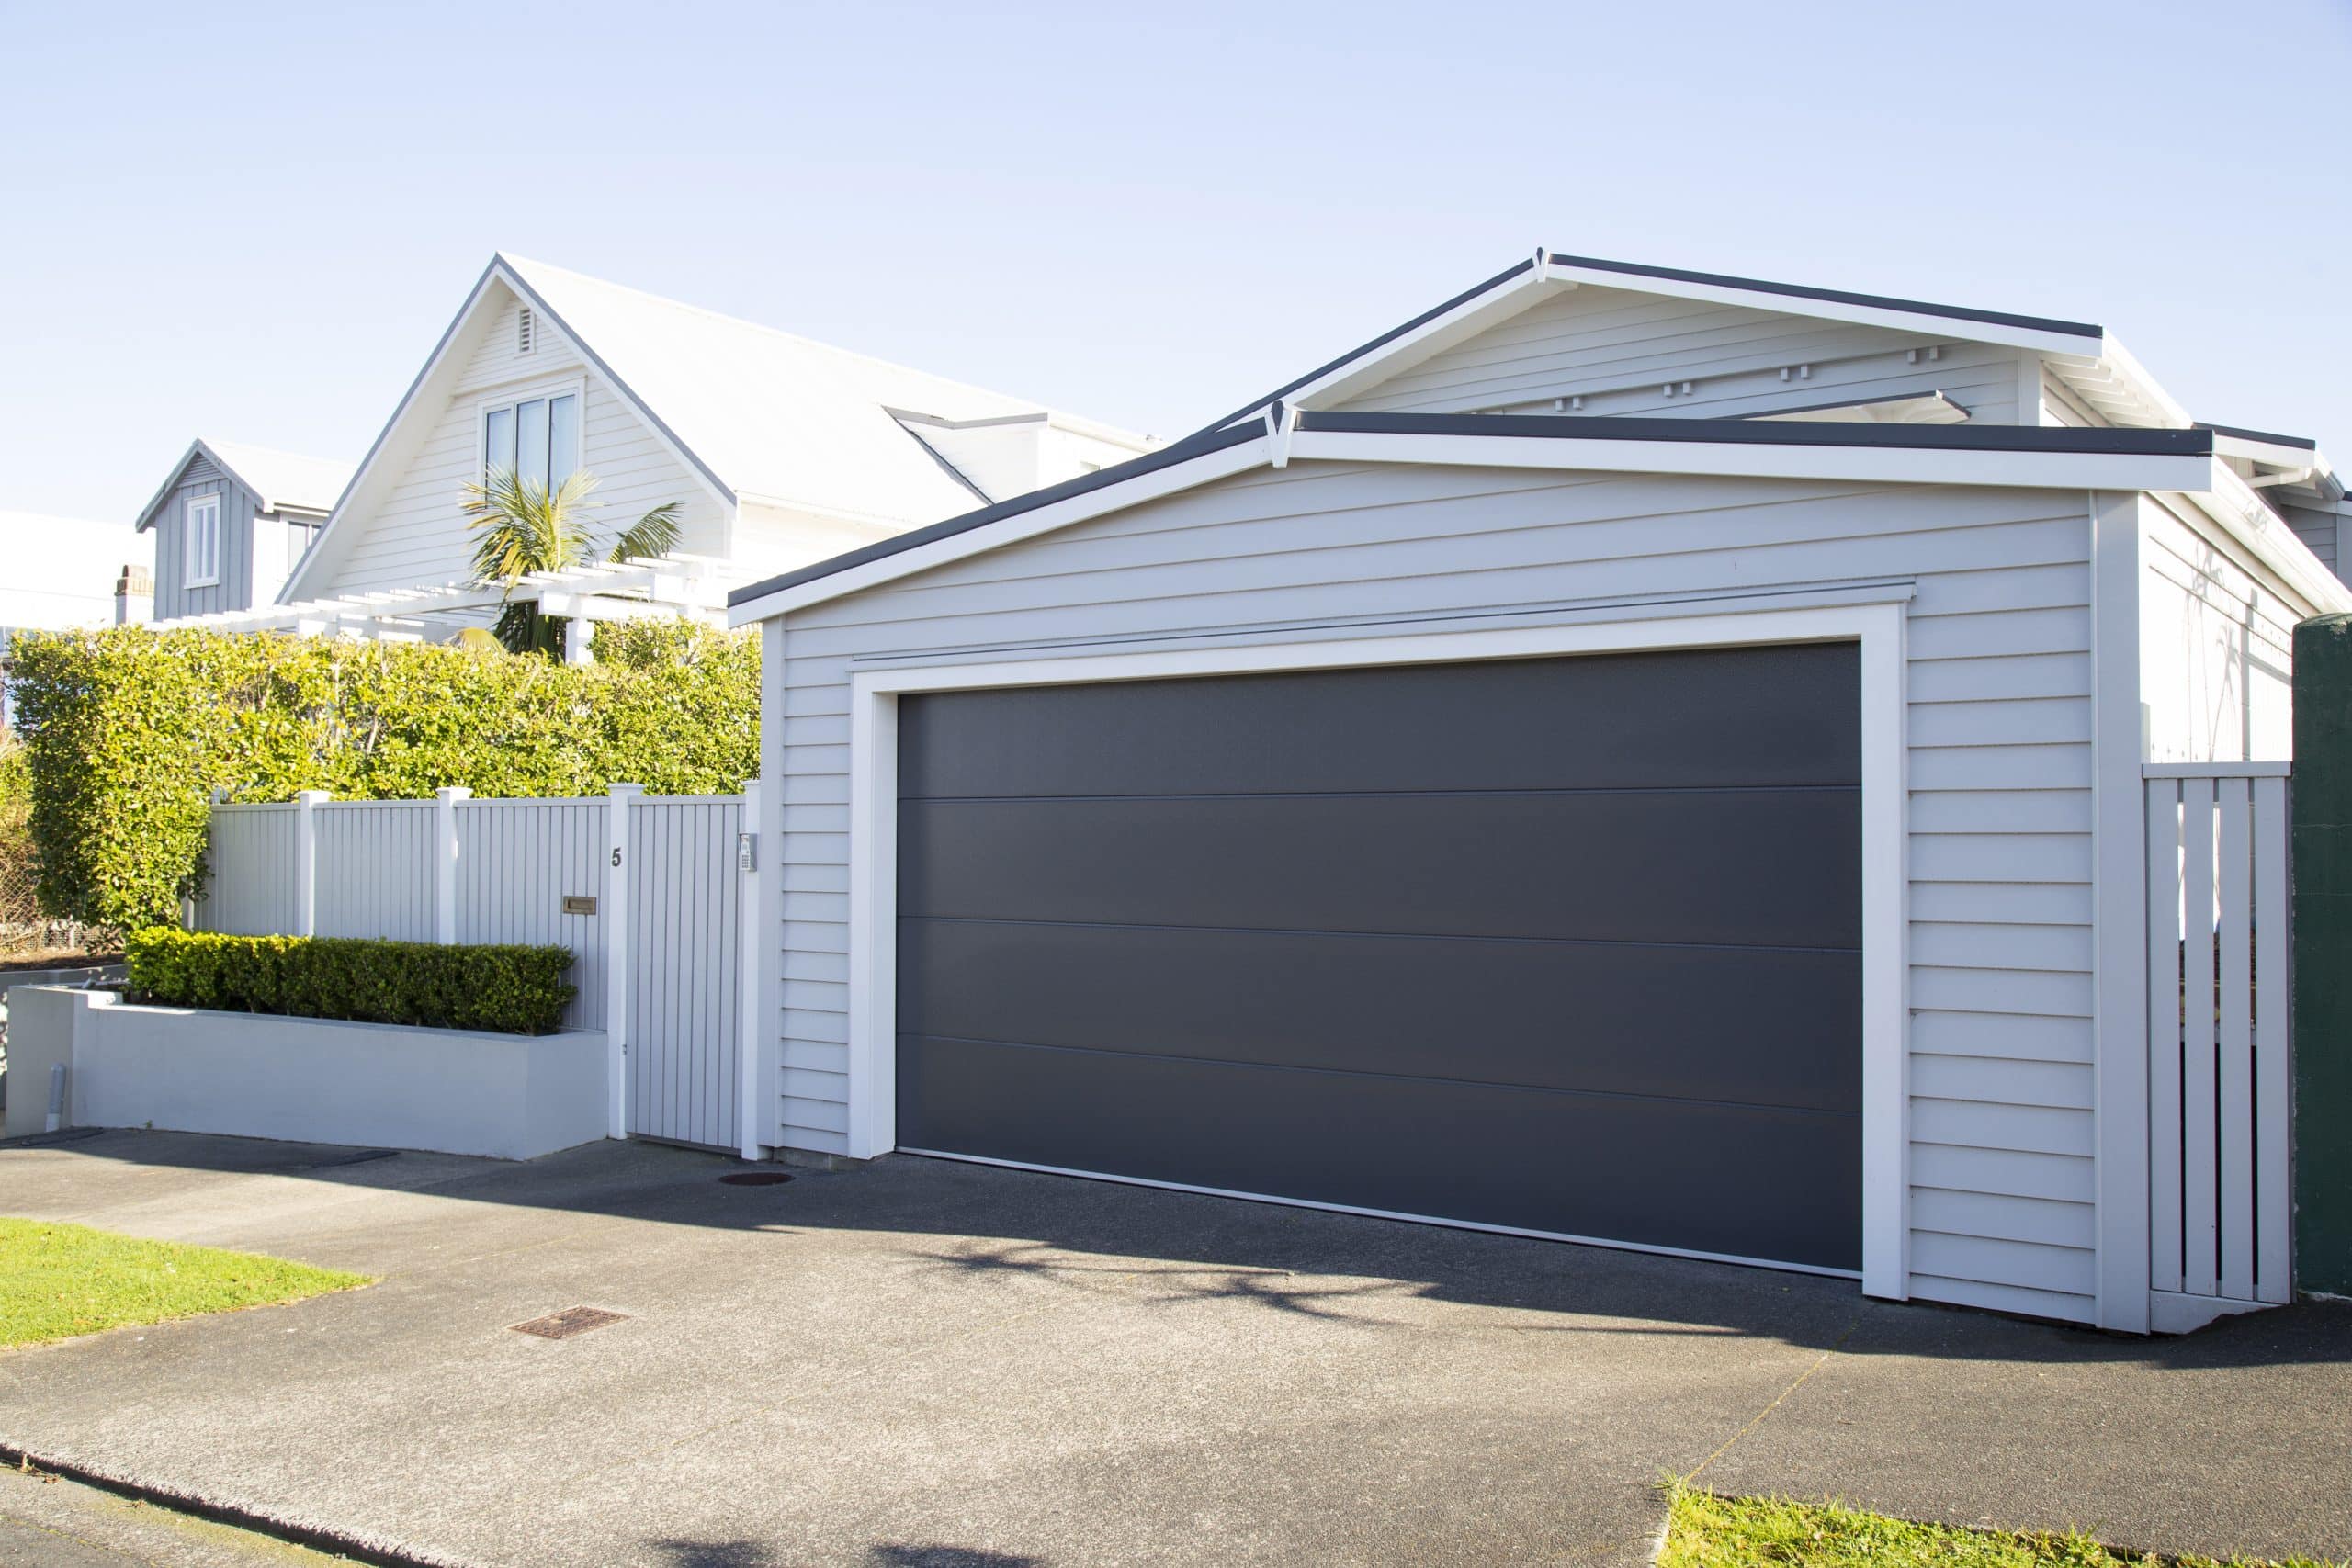 The Garage Door Company - Auckland, NZ, garage door